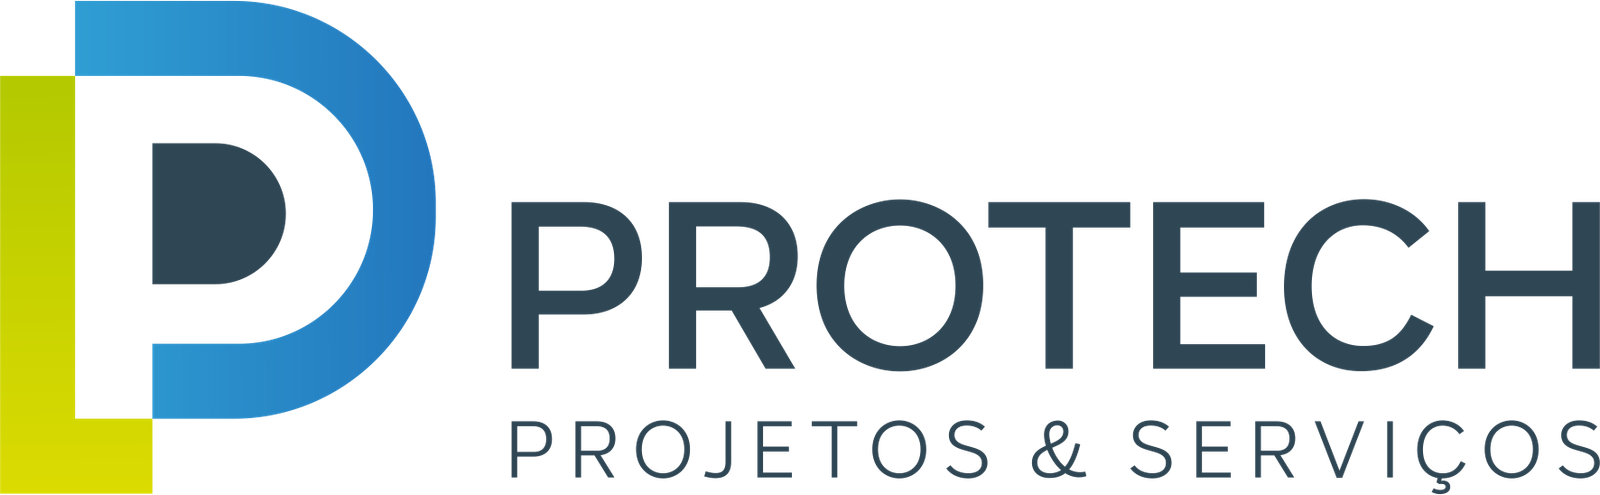 PROTECH projetos e serviços